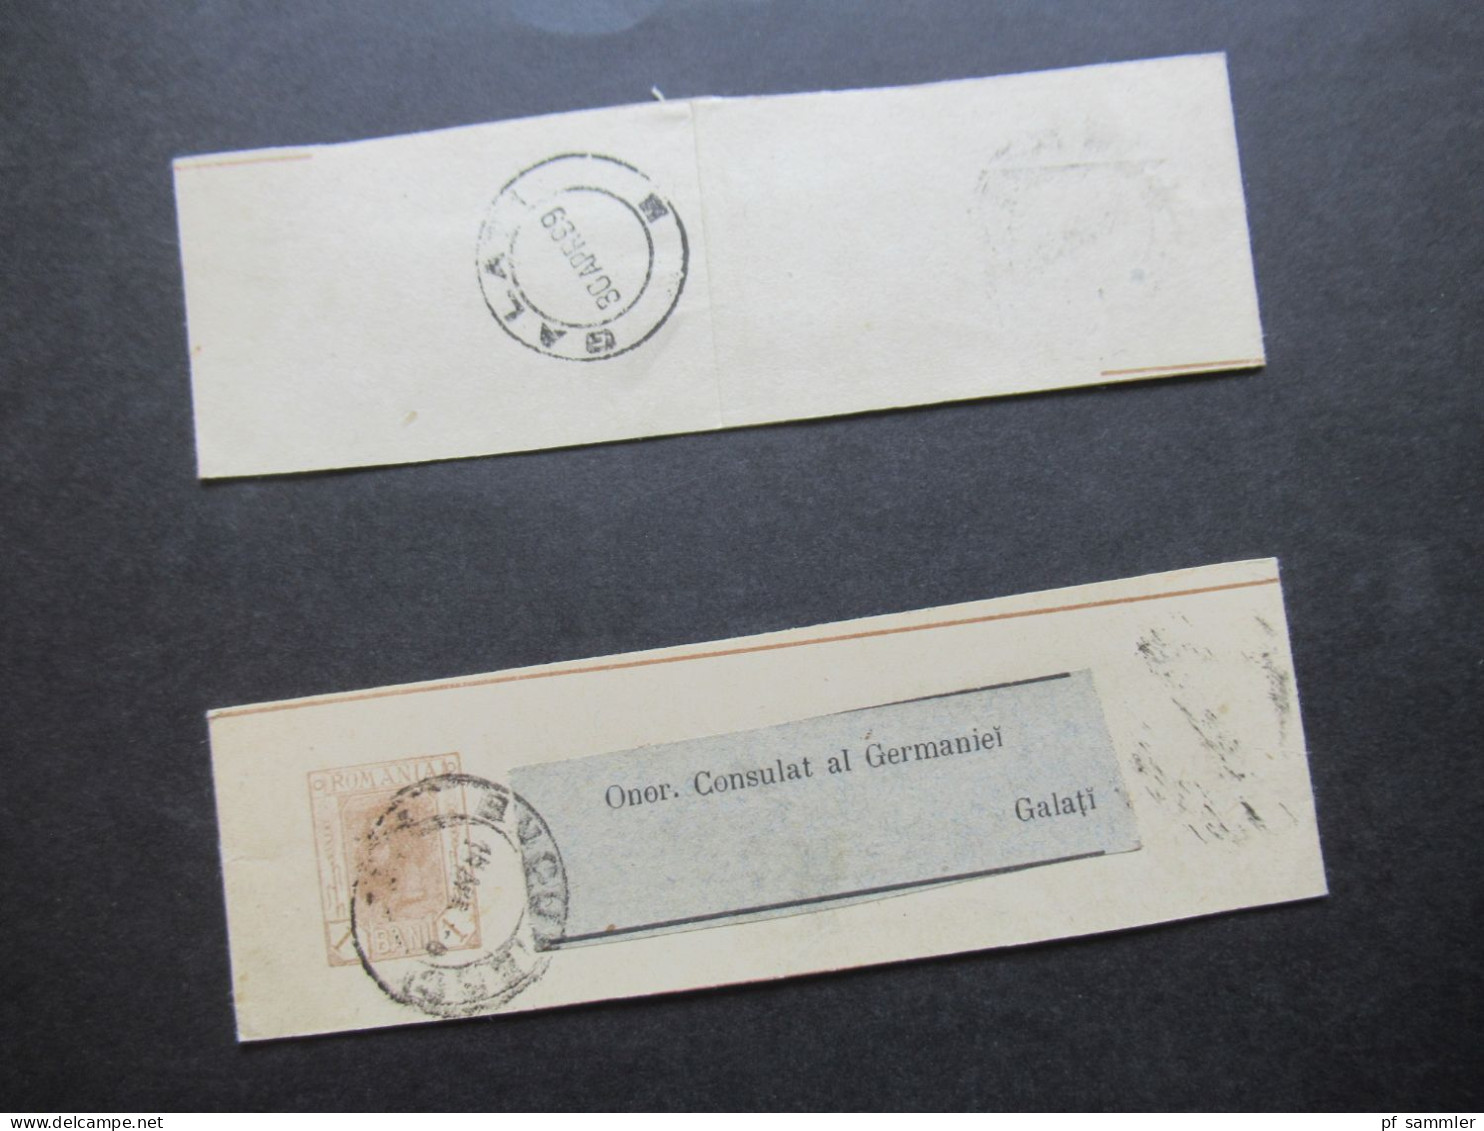 Rumänien 1899 Ganzsachen / 2x Streifband Mit Adressaufkleber Onor. Consulat Al Germaniei Galati - Interi Postali